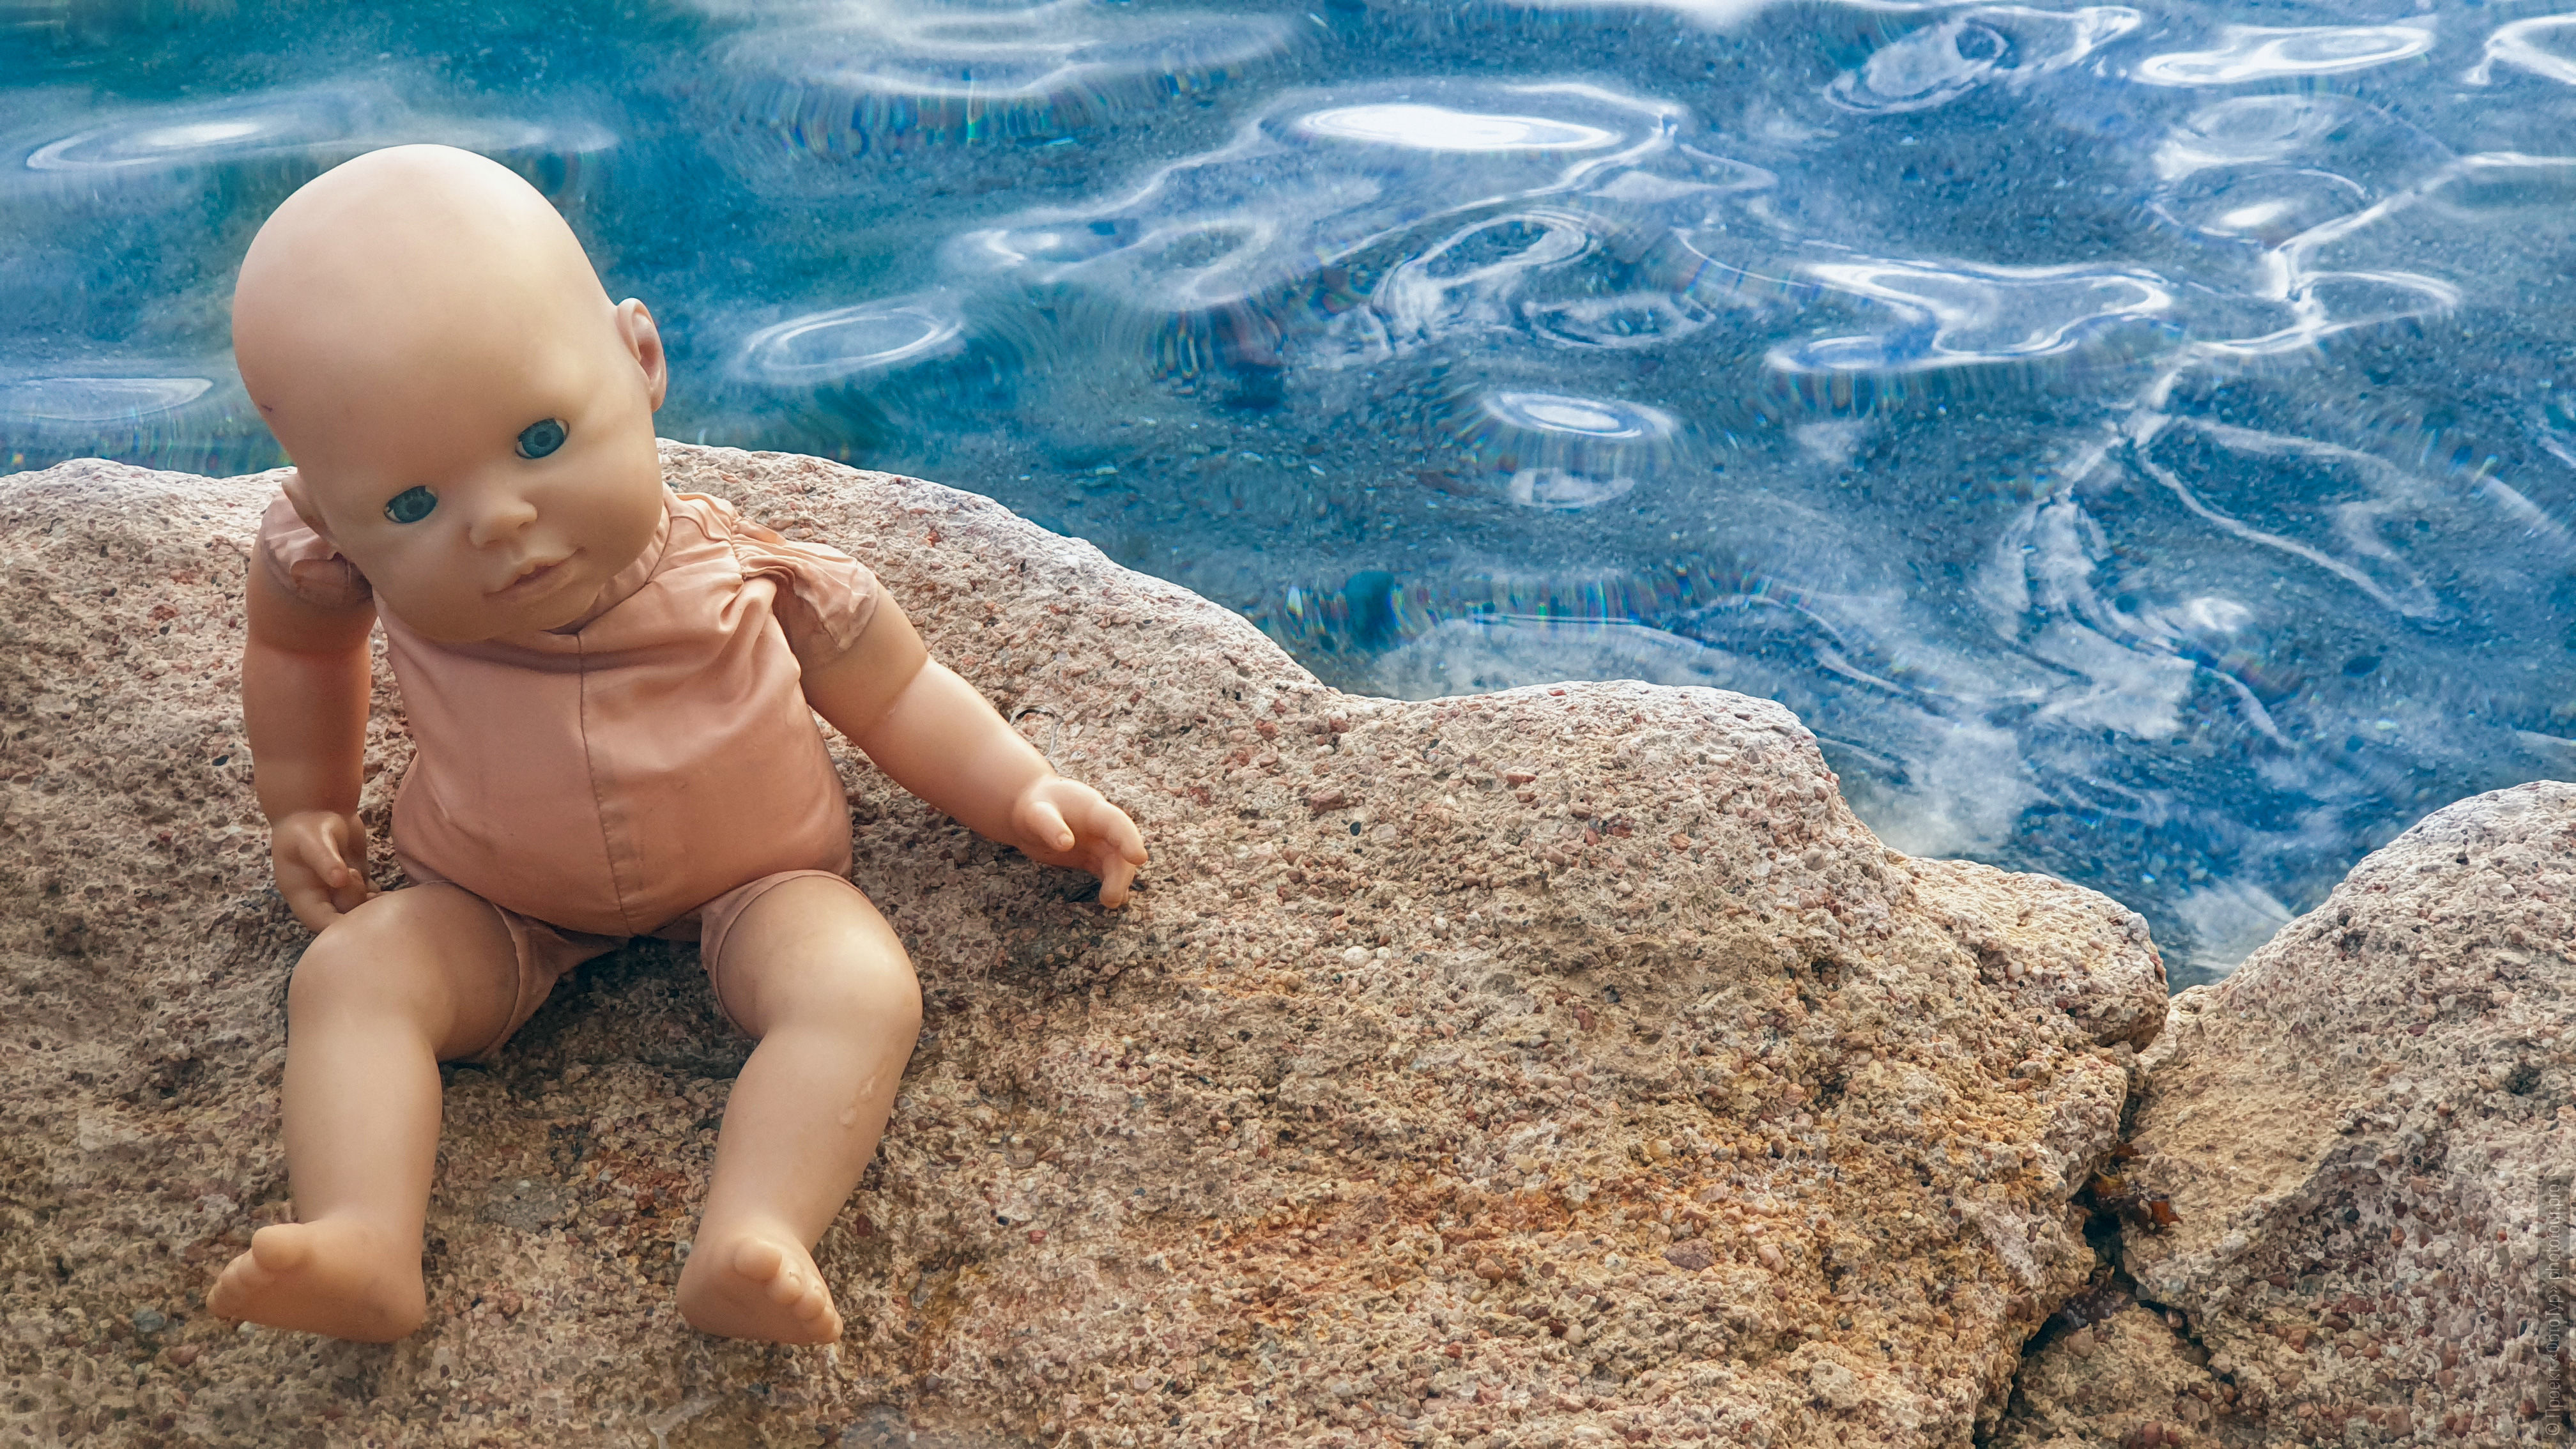 Кукла в отпуске, Дахаб, Синай. Акварельный фототур по Синаю: Красное Море и Цветные Горы, 18 ноября - 27 ноября 2023 года.